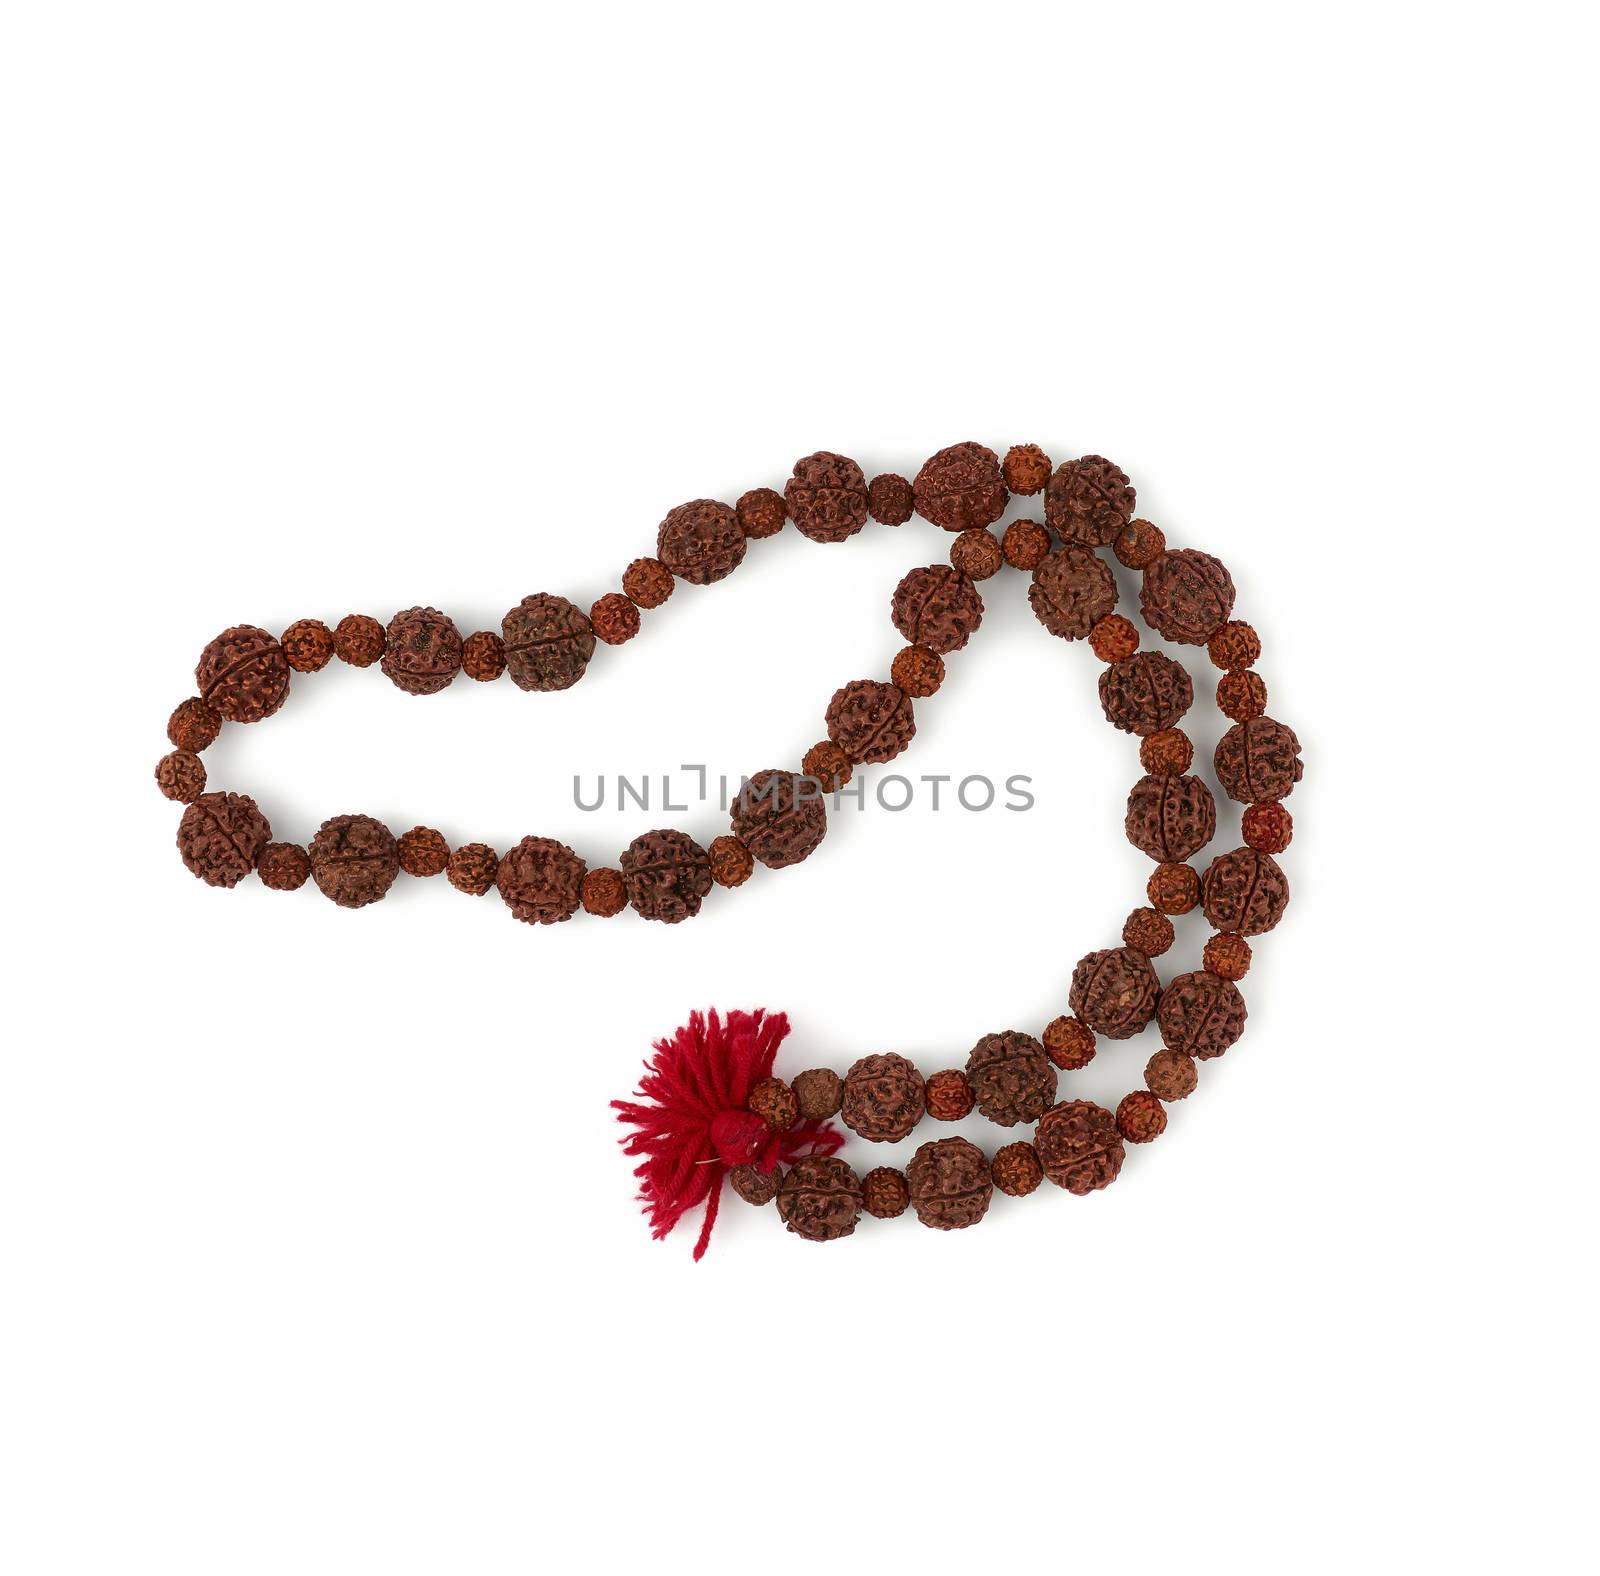 Rudraksha prayer beads for meditation isolated on white backgrou by ndanko